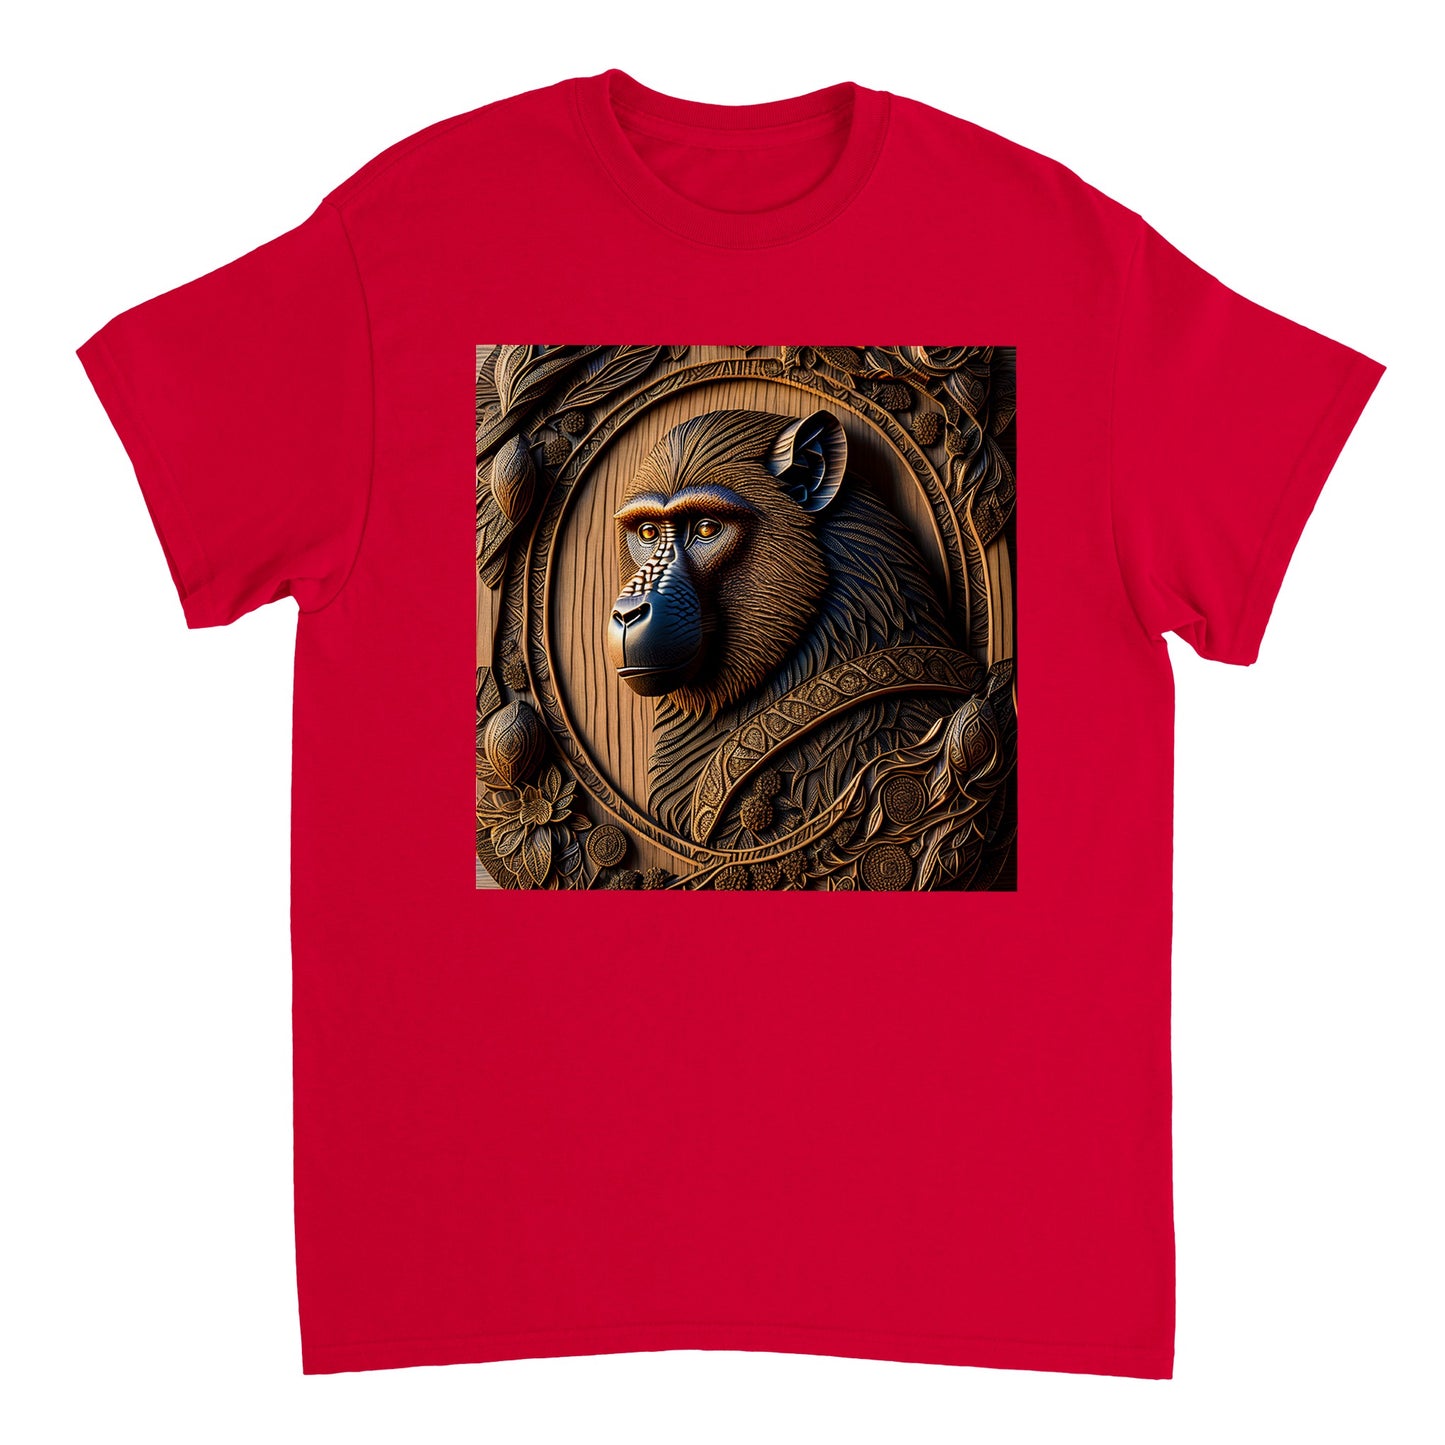 3D Wooden Animal Art - Heavyweight Unisex Crewneck T-shirt 60